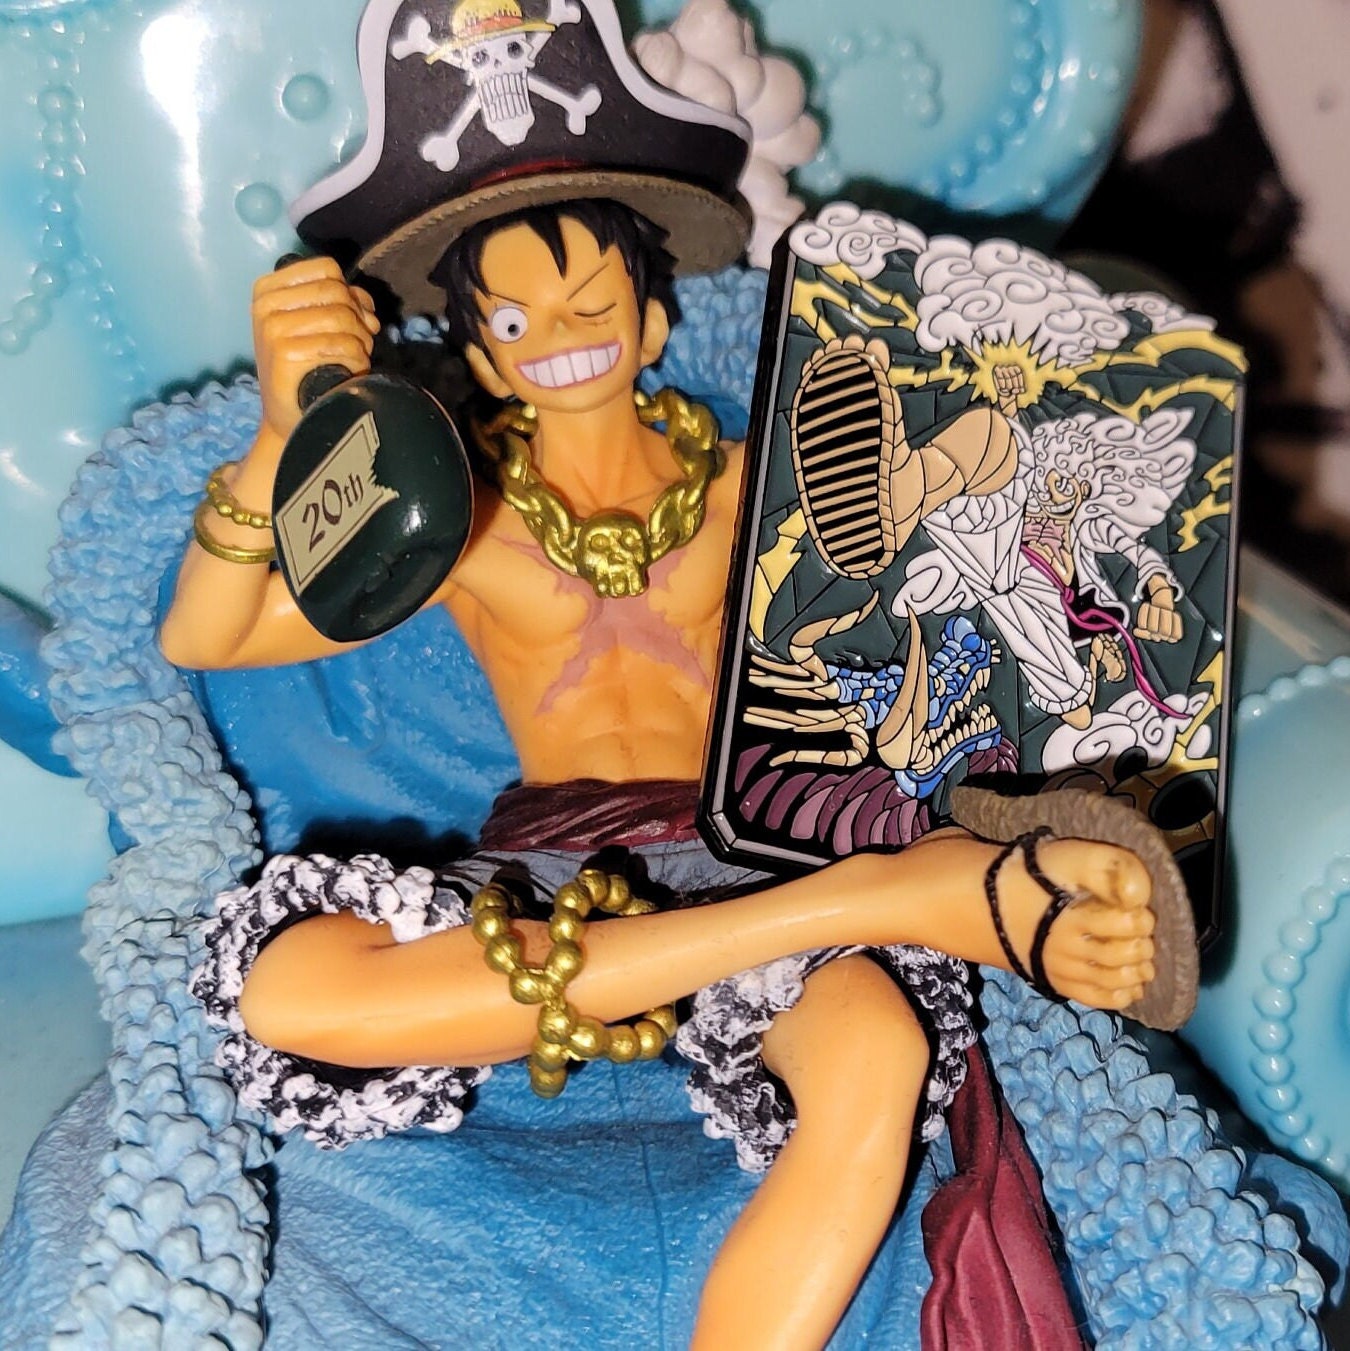 Copy of One Piece Luffy Cadeau parfait Pin for Sale by Dmmetetz